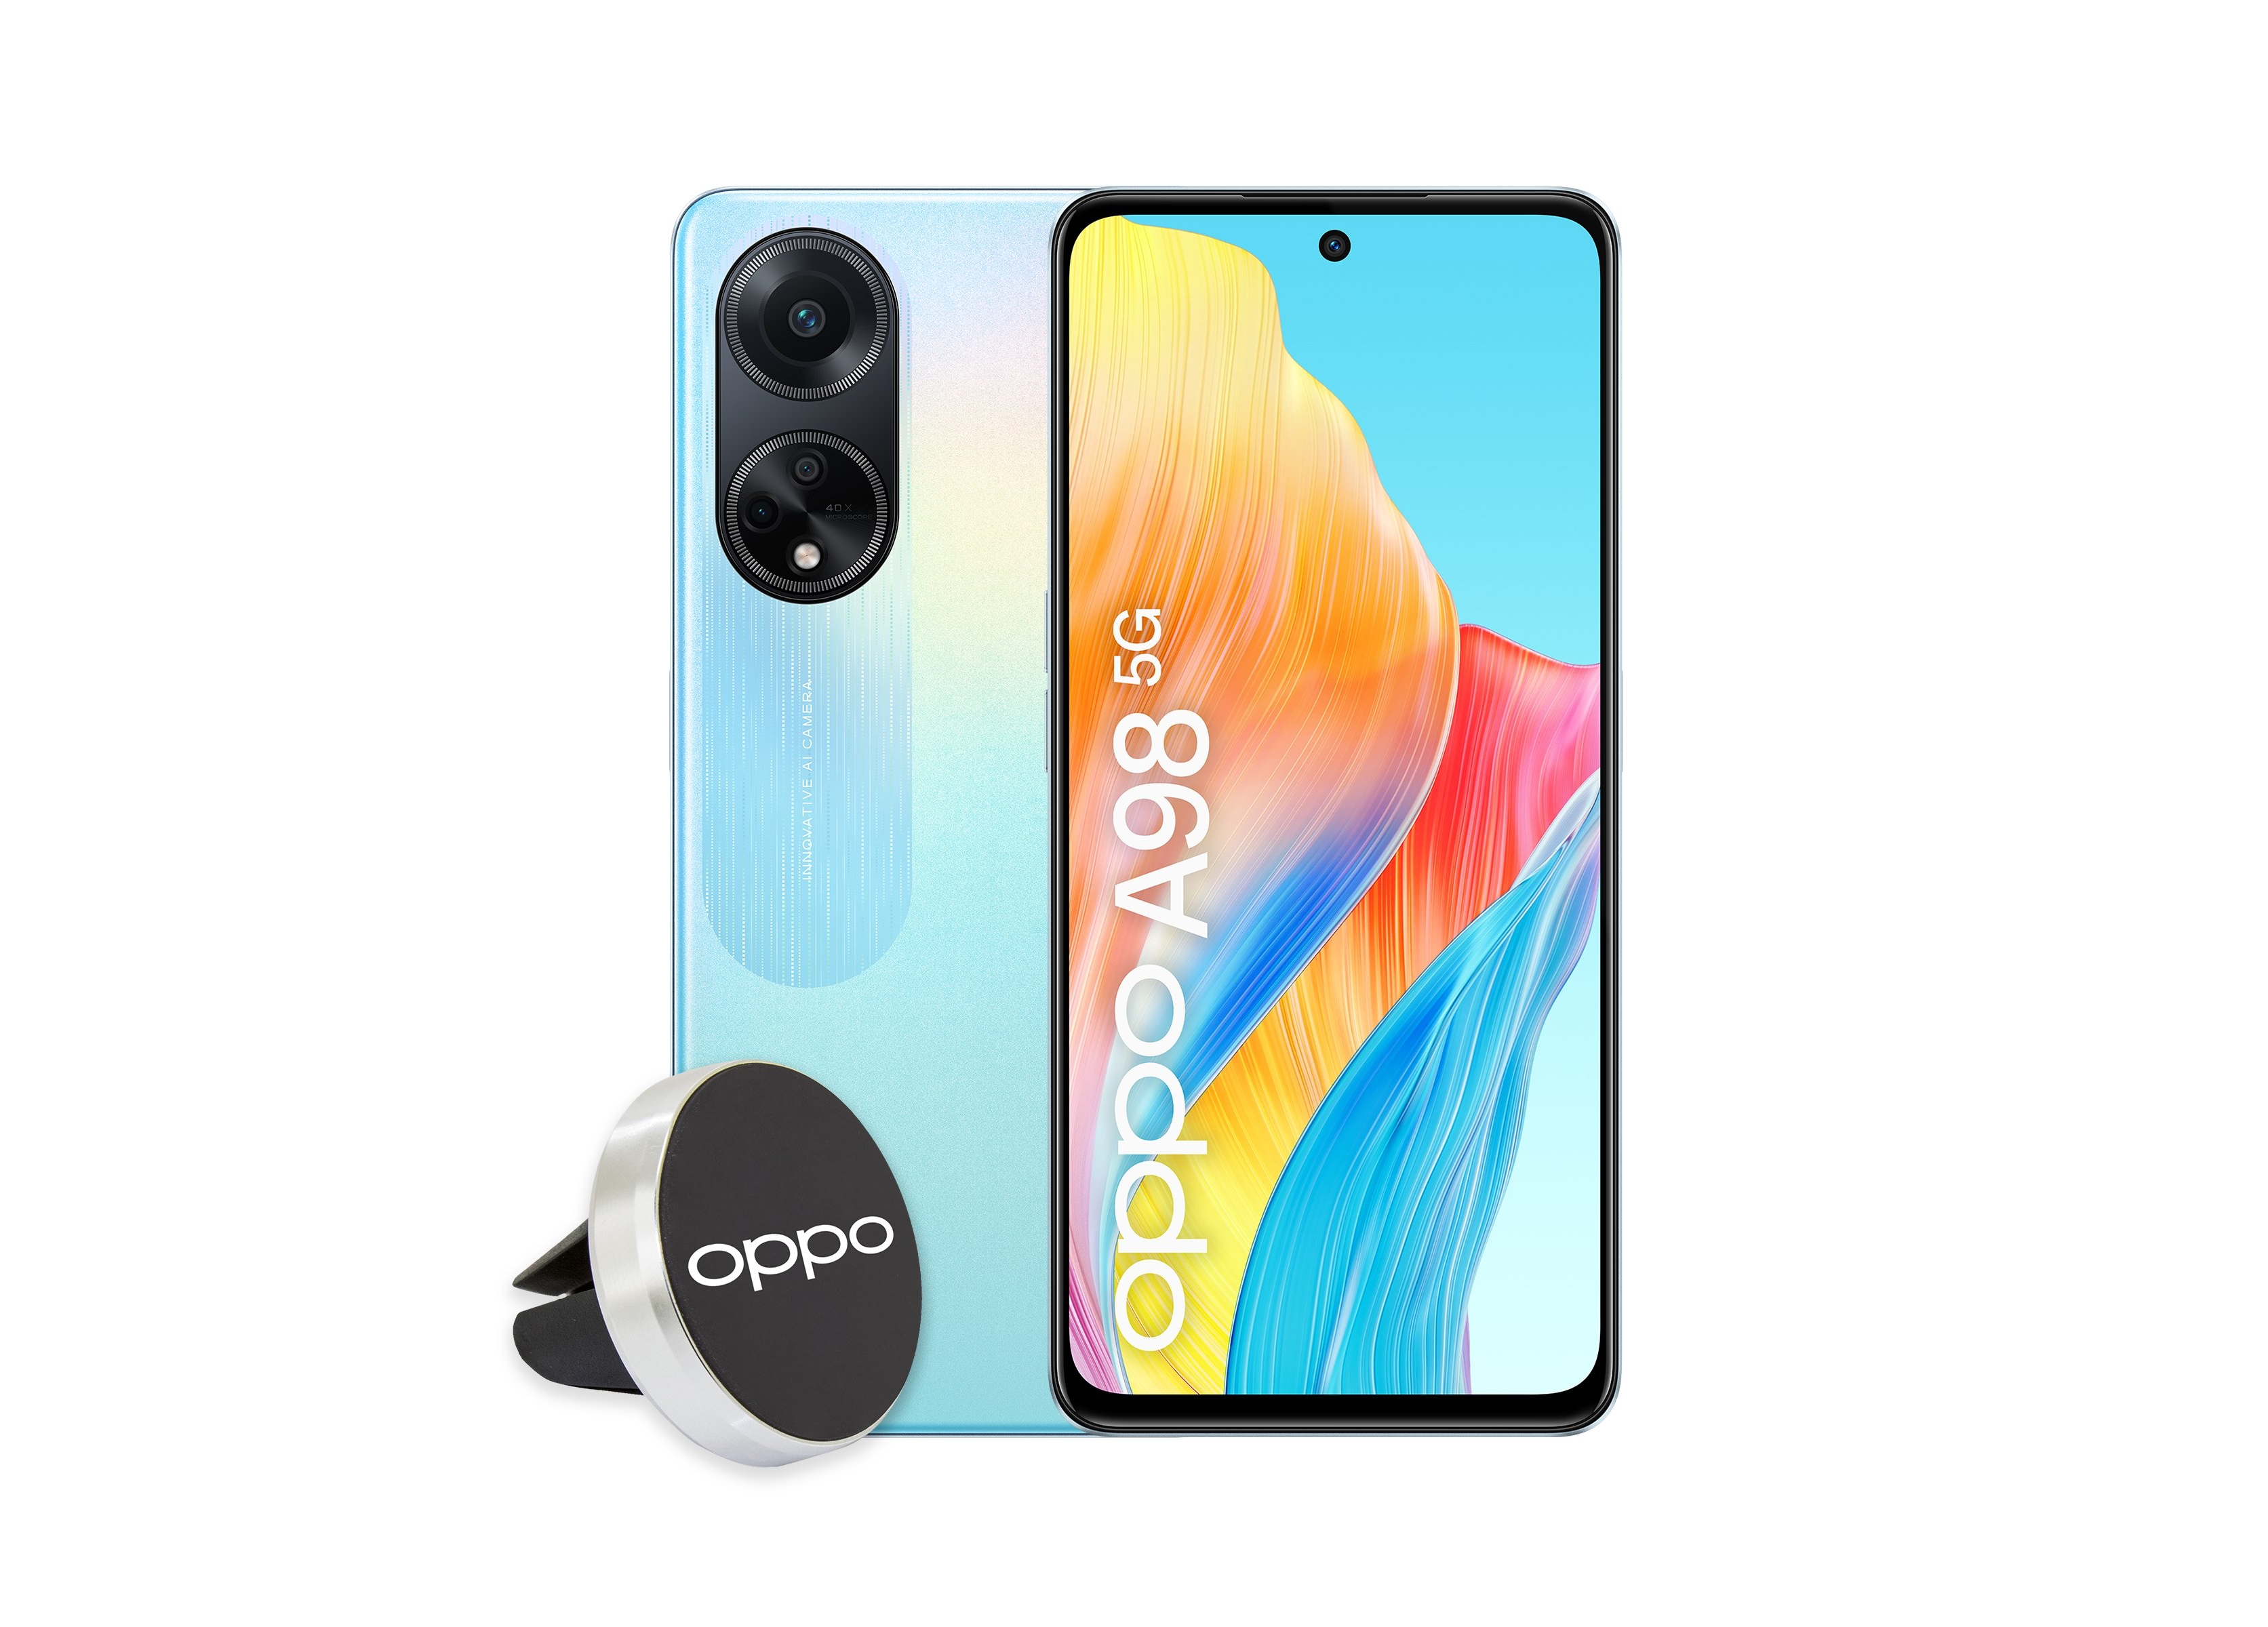 Insider zeigt Renderings des OPPO A98 5G: Smartphone mit 120Hz-Bildschirm und Snapdragon 695-Chip